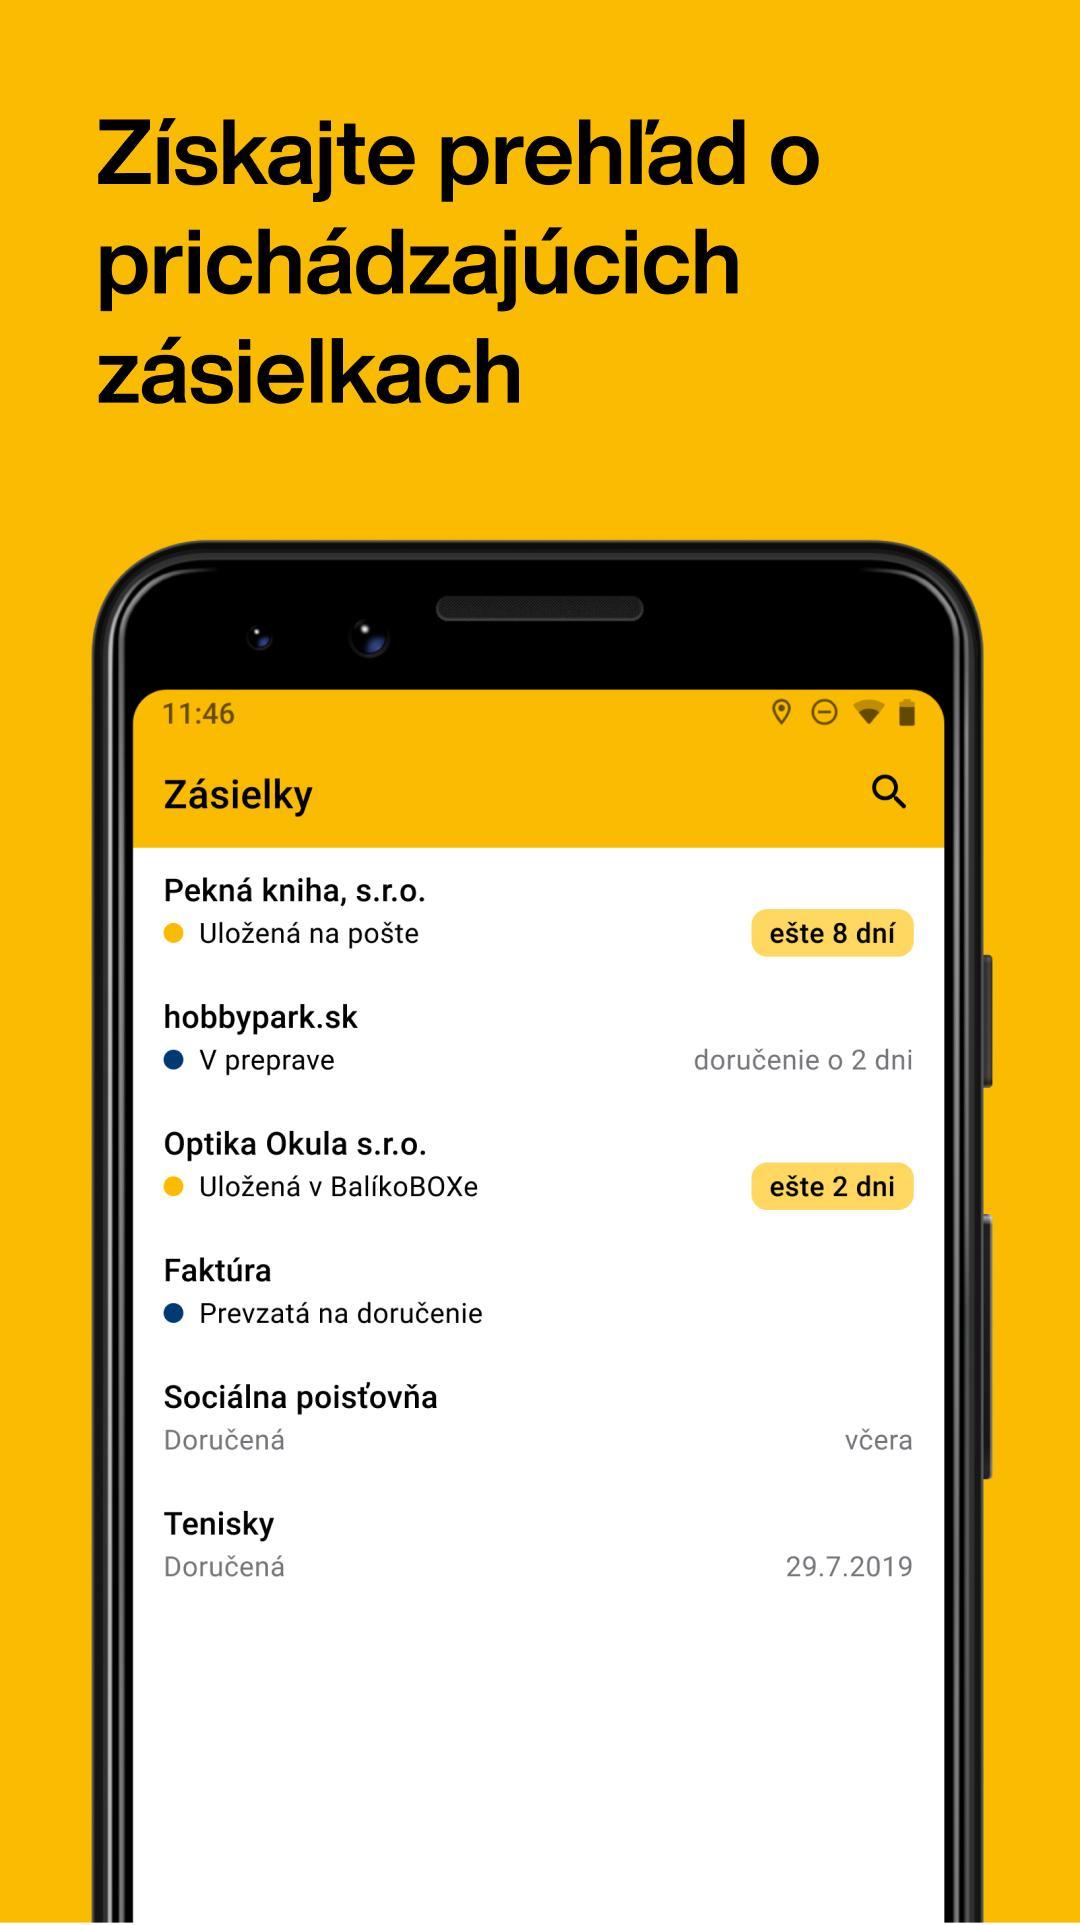 Slovenská pošta for Android - APK Download